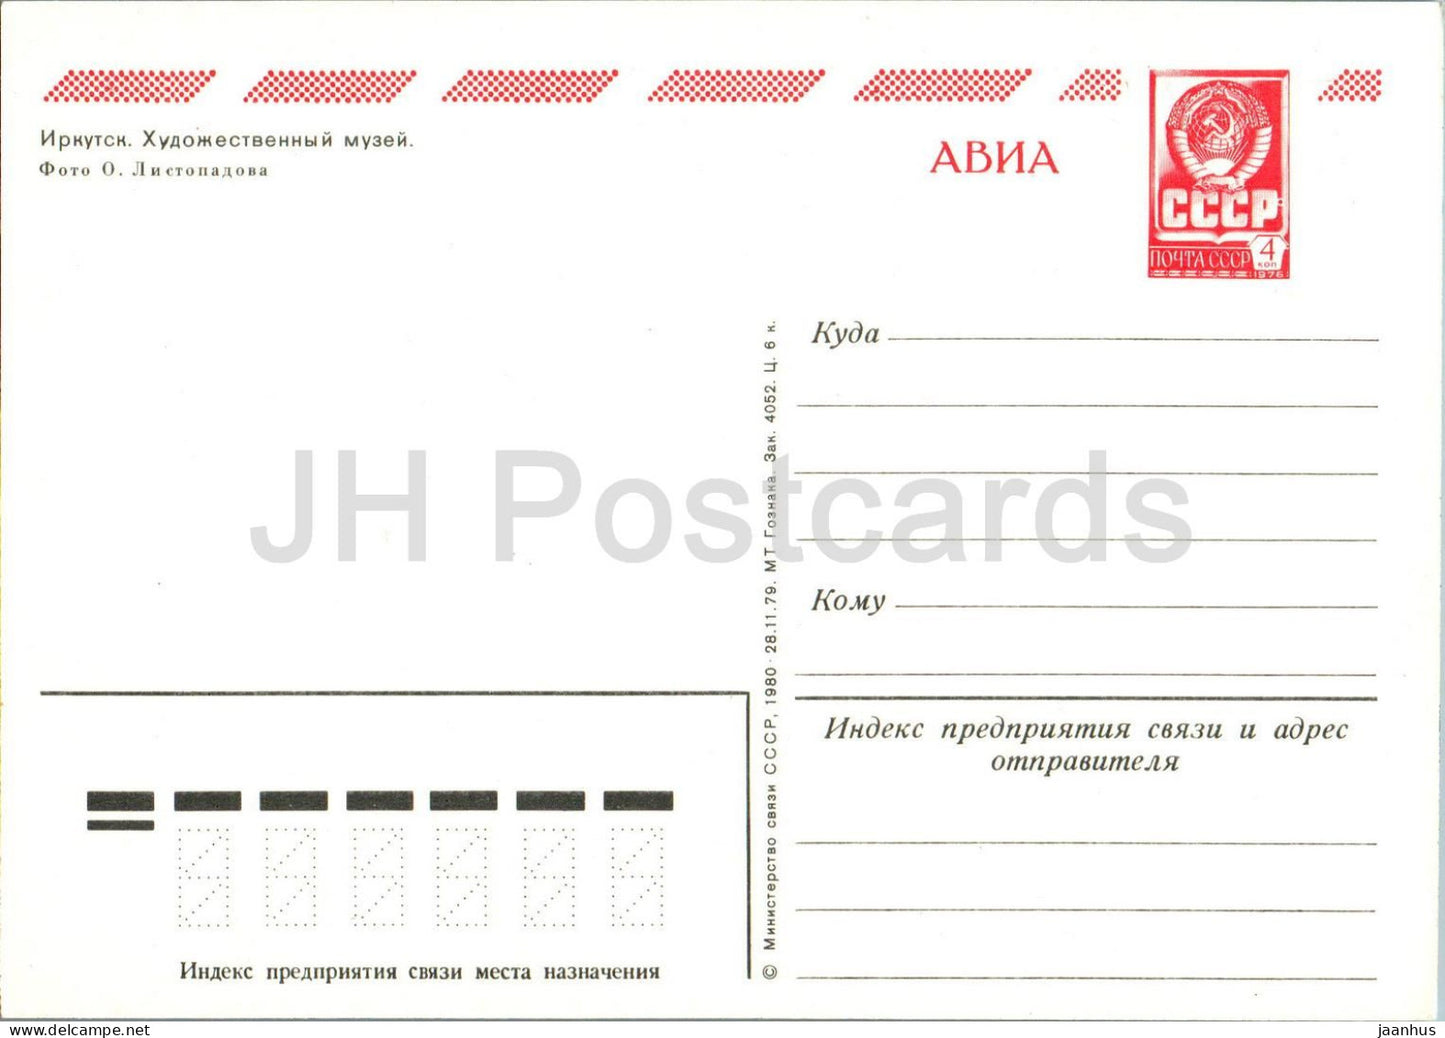 Irkutsk - Art Museum  - postal stationery - AVIA - 1980 - Russia USSR - unused